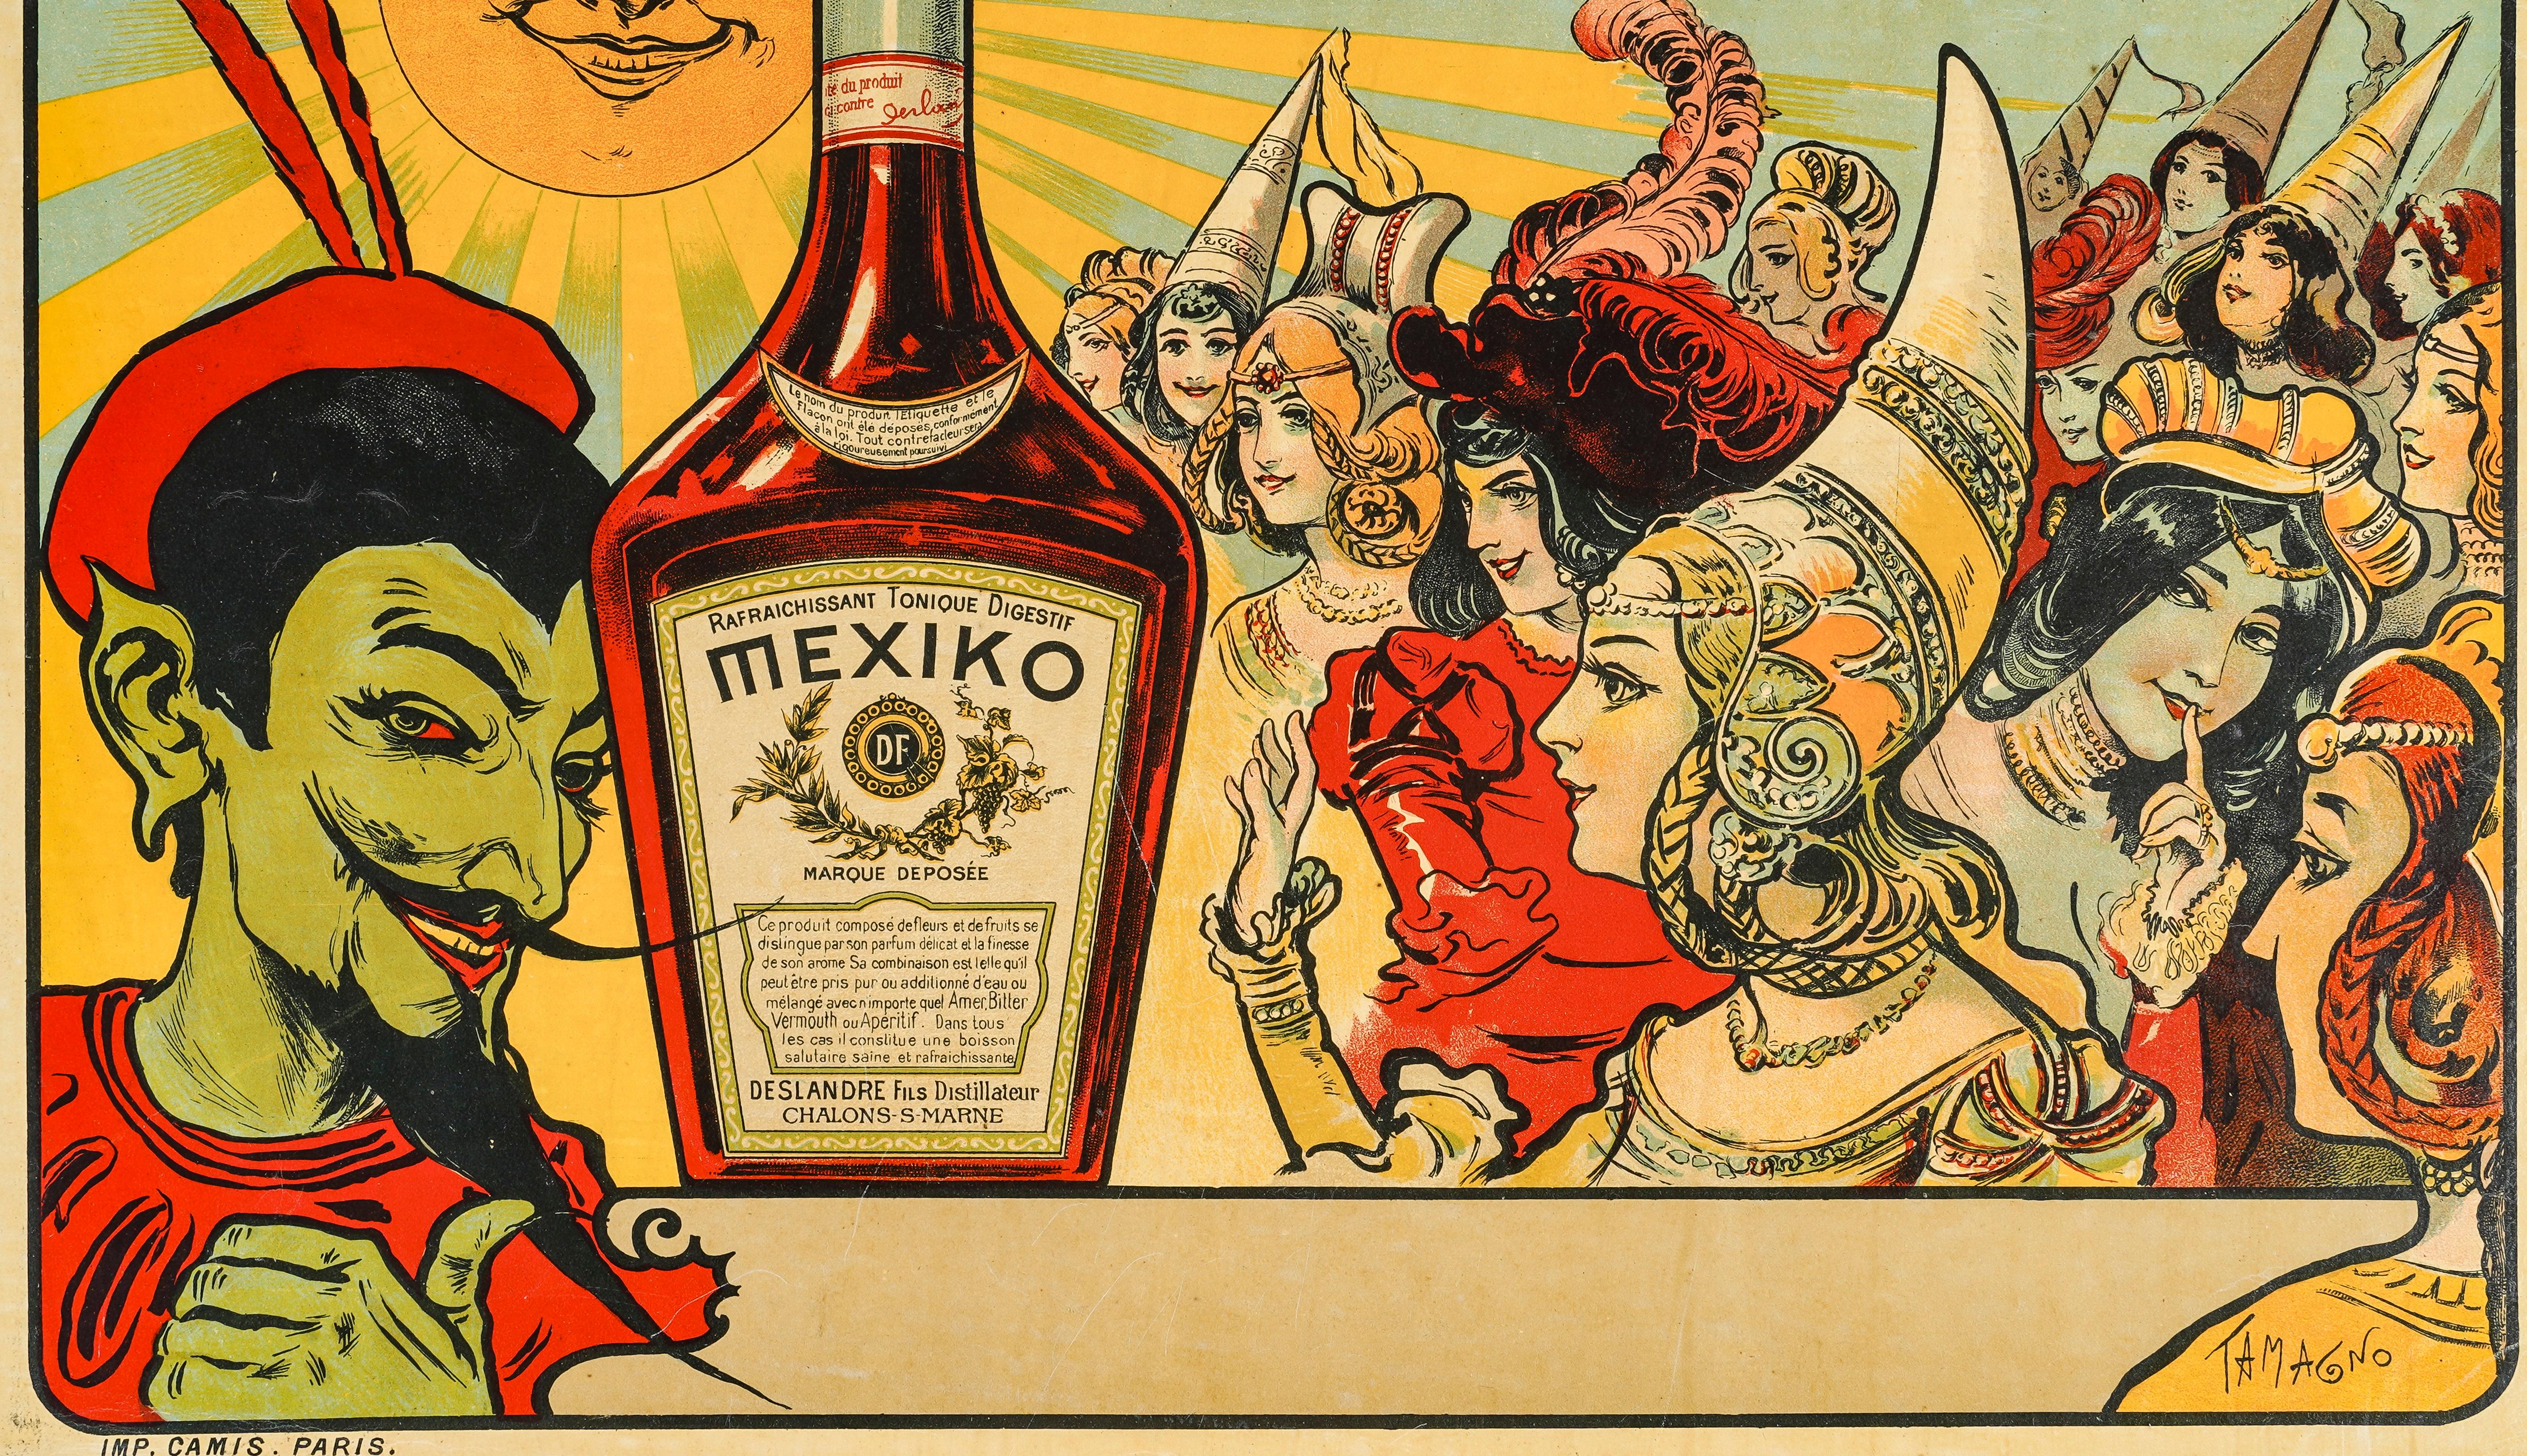 Affiche de Fransisco Tamagno datant de 1900 qui fait la promotion du digestif Mexiko, distillé par Deslandres Fils à Chalons sur Marne (ancien nom de Chalons en Champagne).

Artistics : Fransisco Tamagno (1851-1933)
Titre : Mexiko
Date : vers